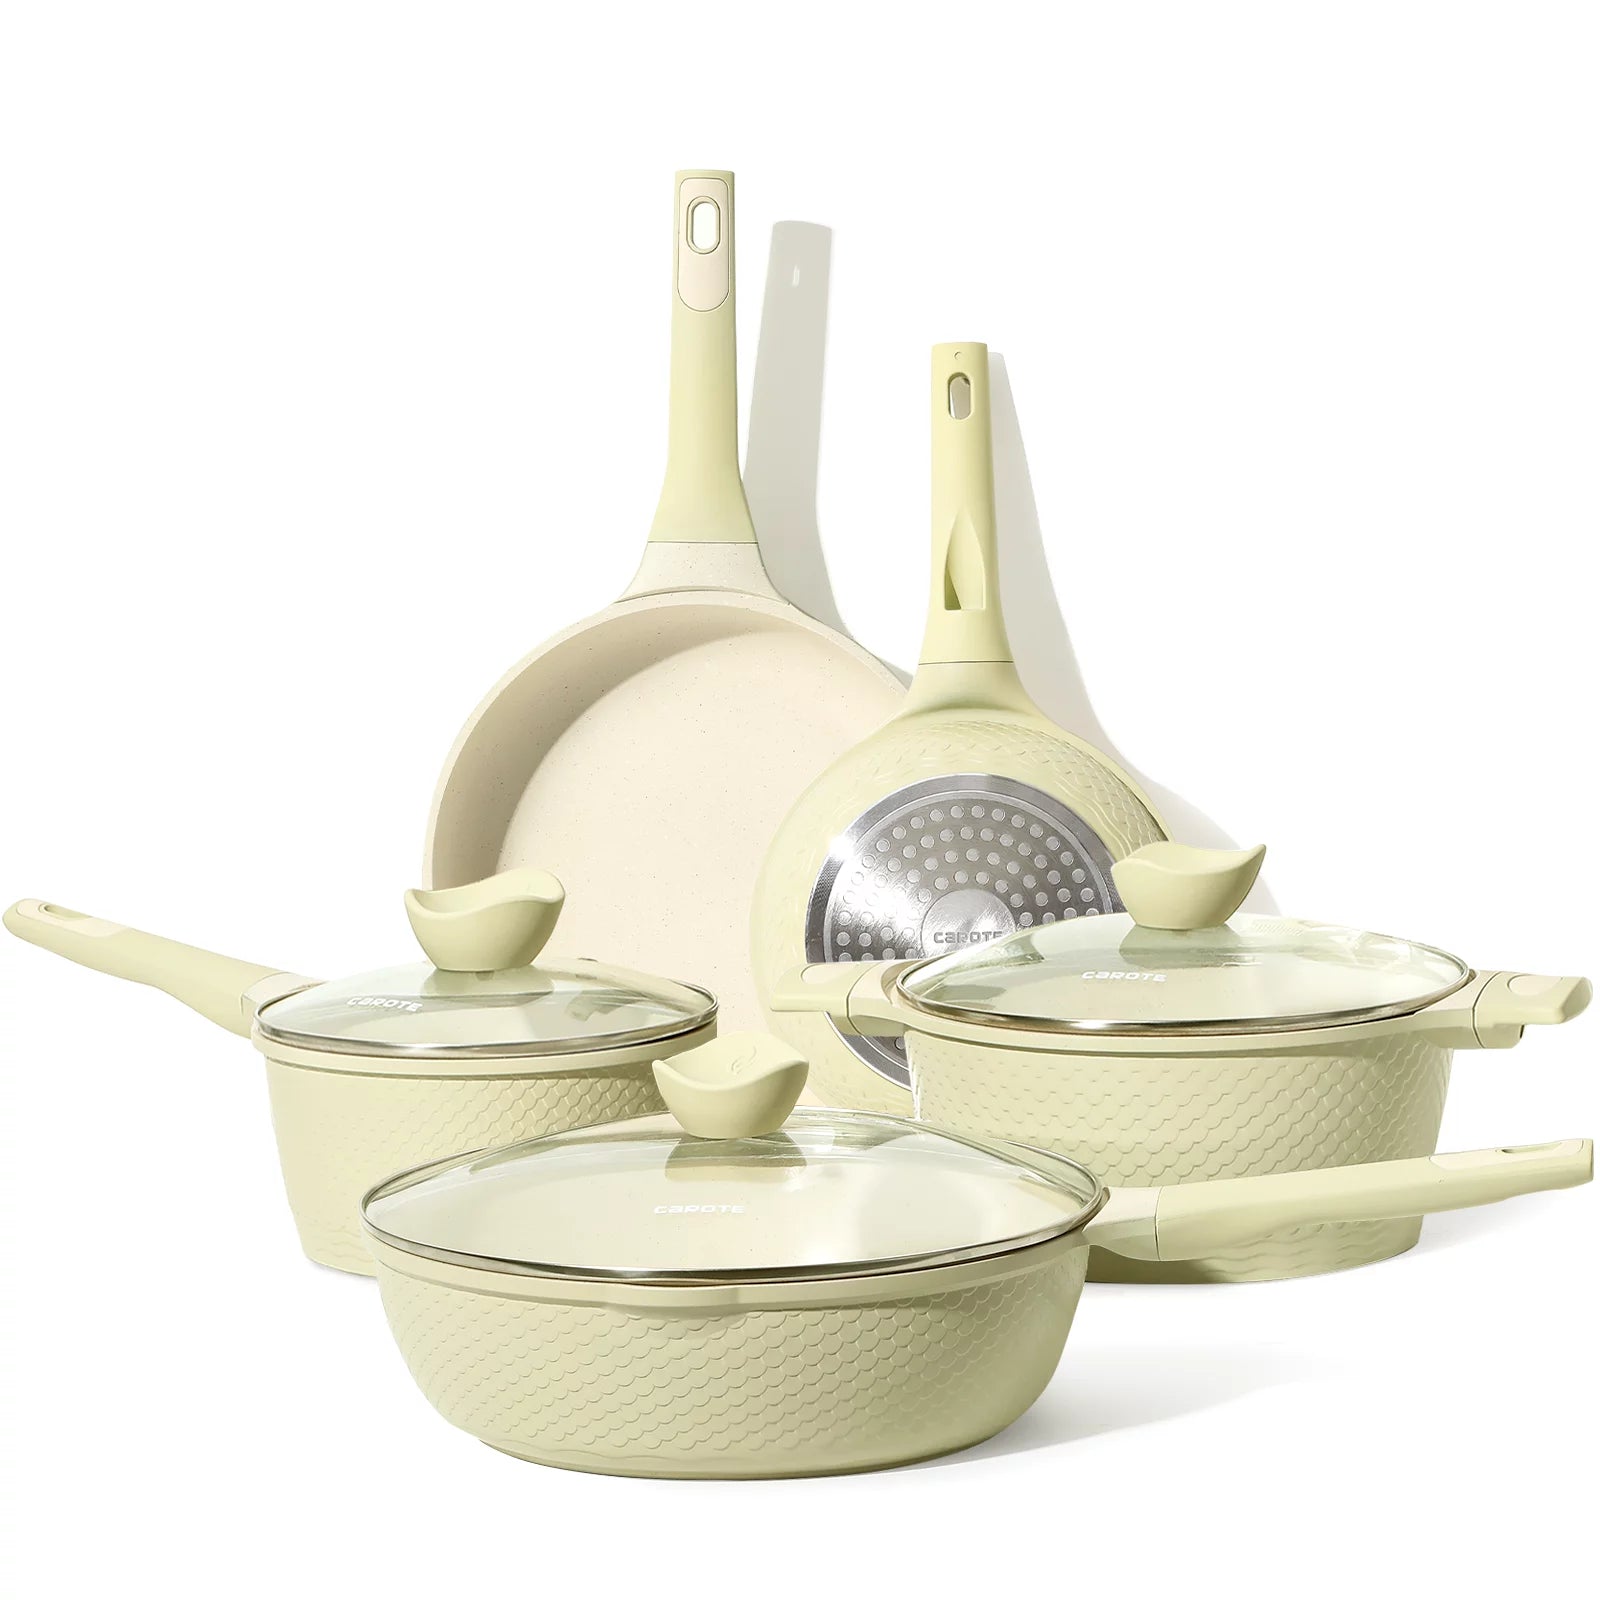 CAROTE Non-stick 8 Pcs Ceramic Cookware Set (Garden Green)